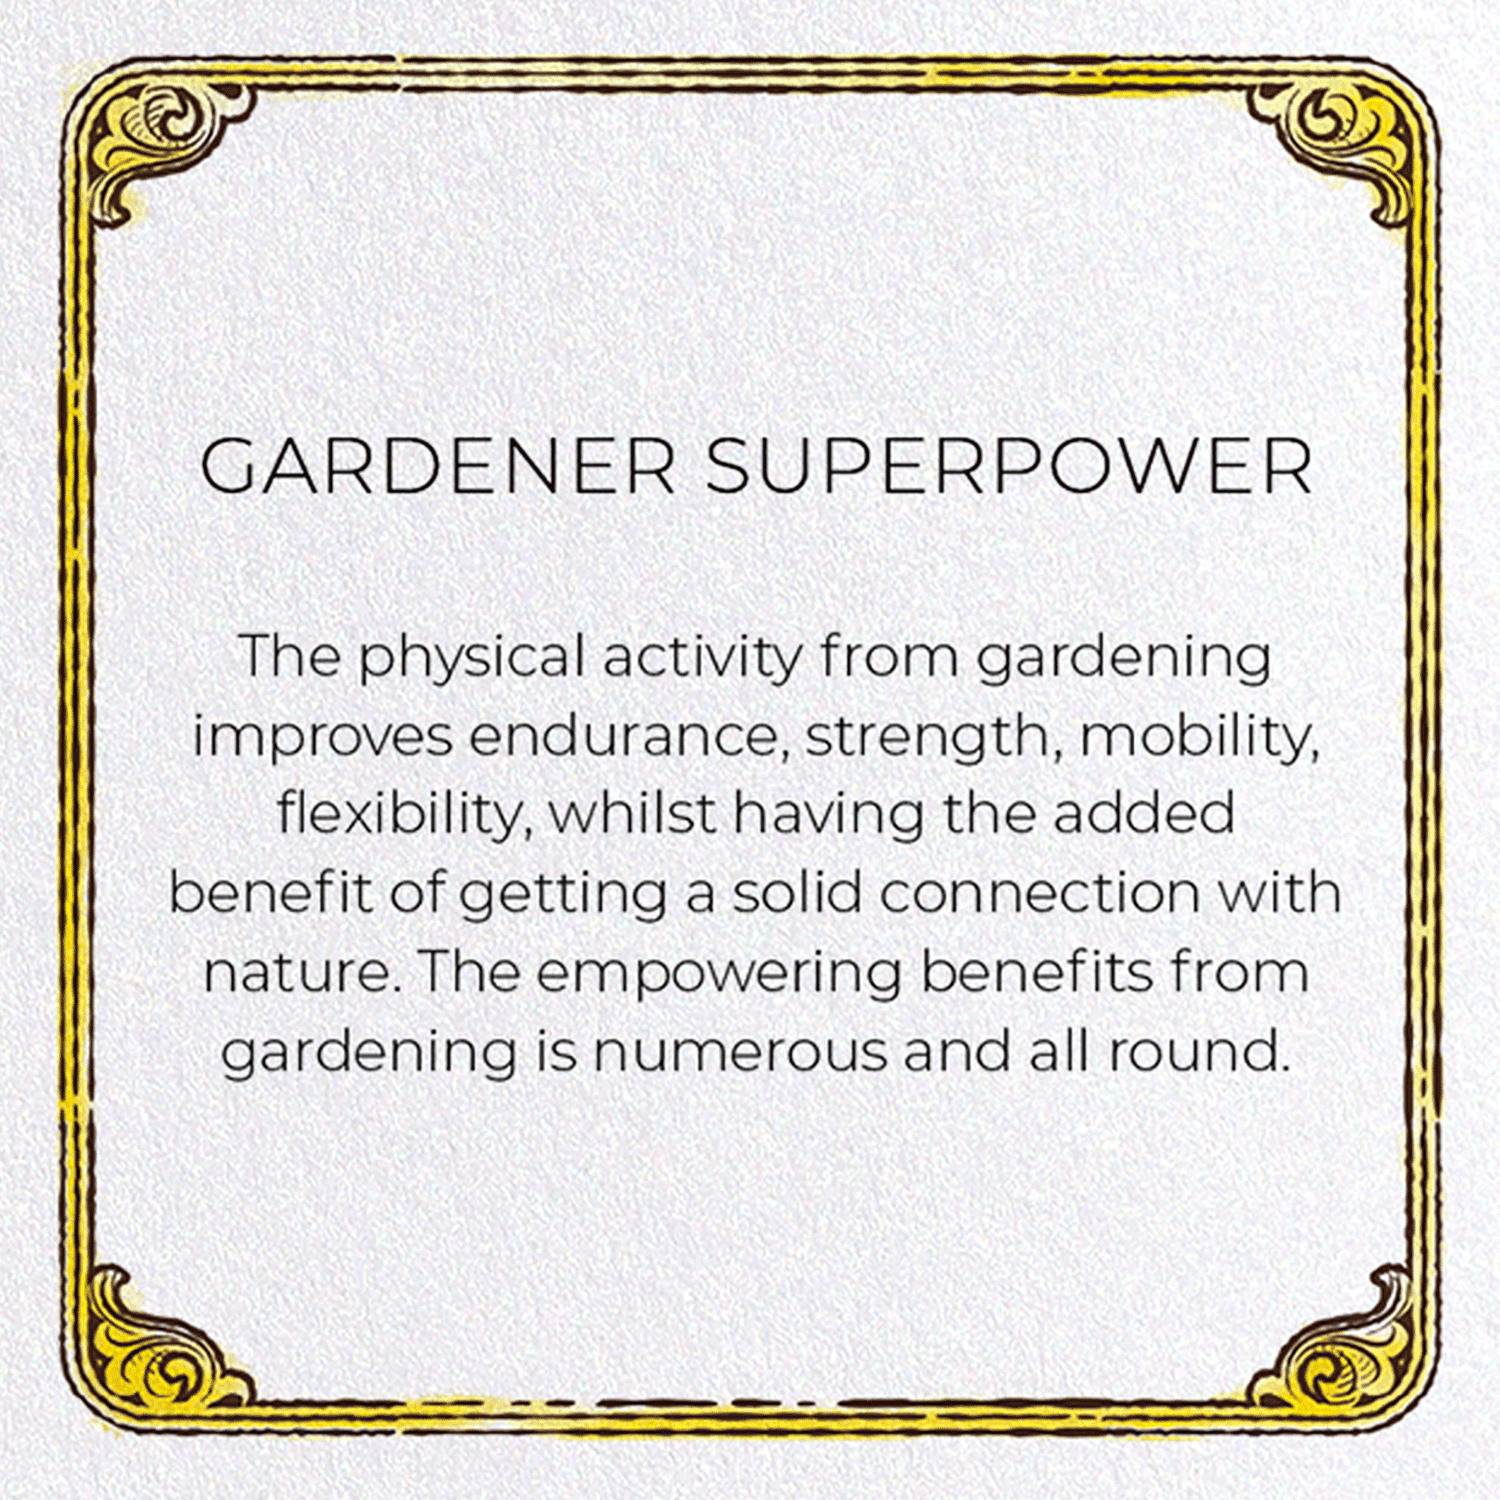 GARDENER SUPERPOWER: Victorian Greeting Card